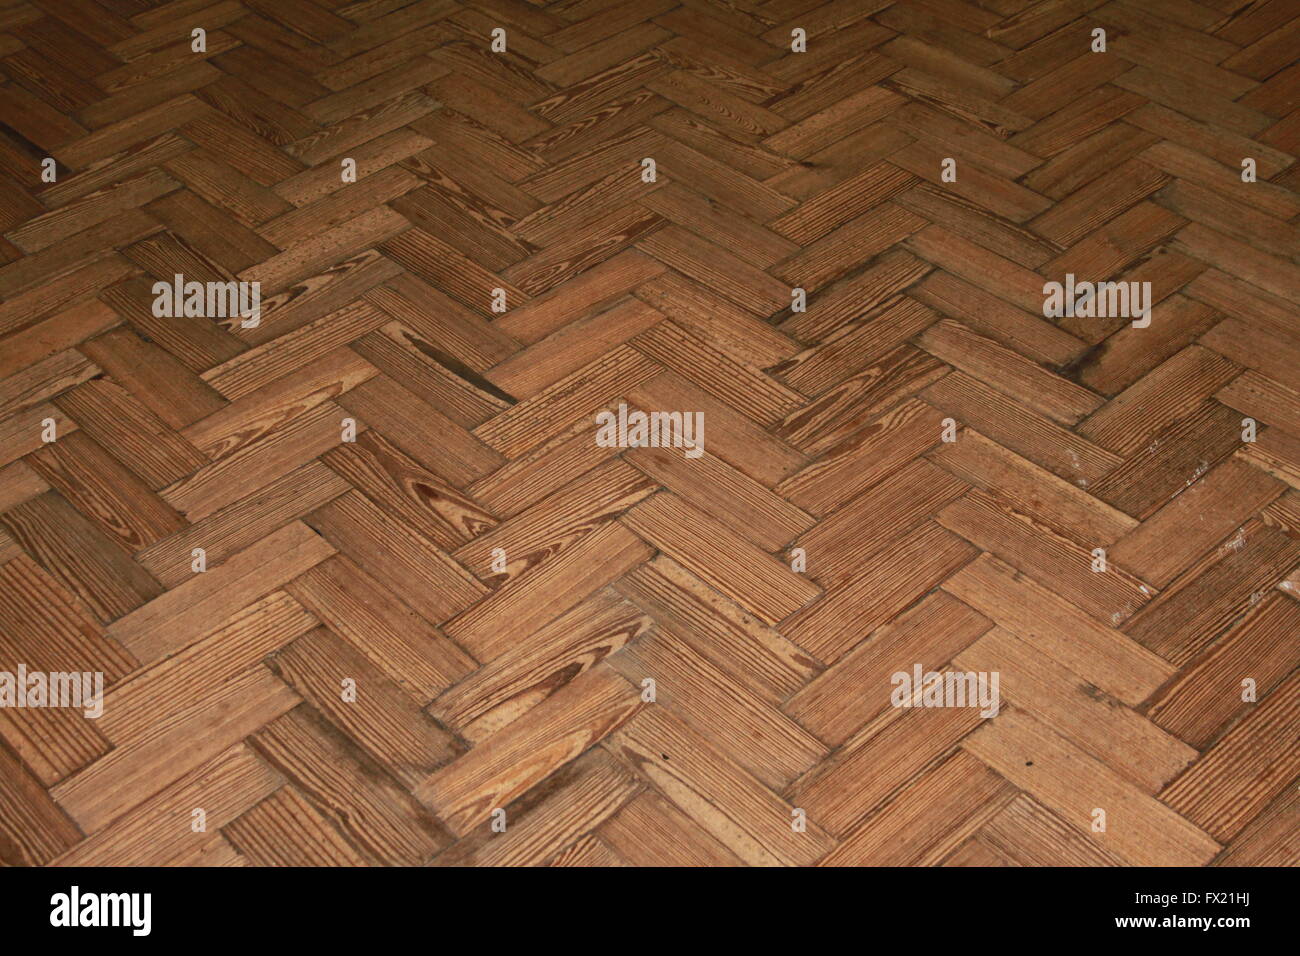 Colpo in prospettiva di molto vecchio pavimento in parquet mostrata in prospettiva che illustra la longevità di naturale pavimenti in legno Foto Stock